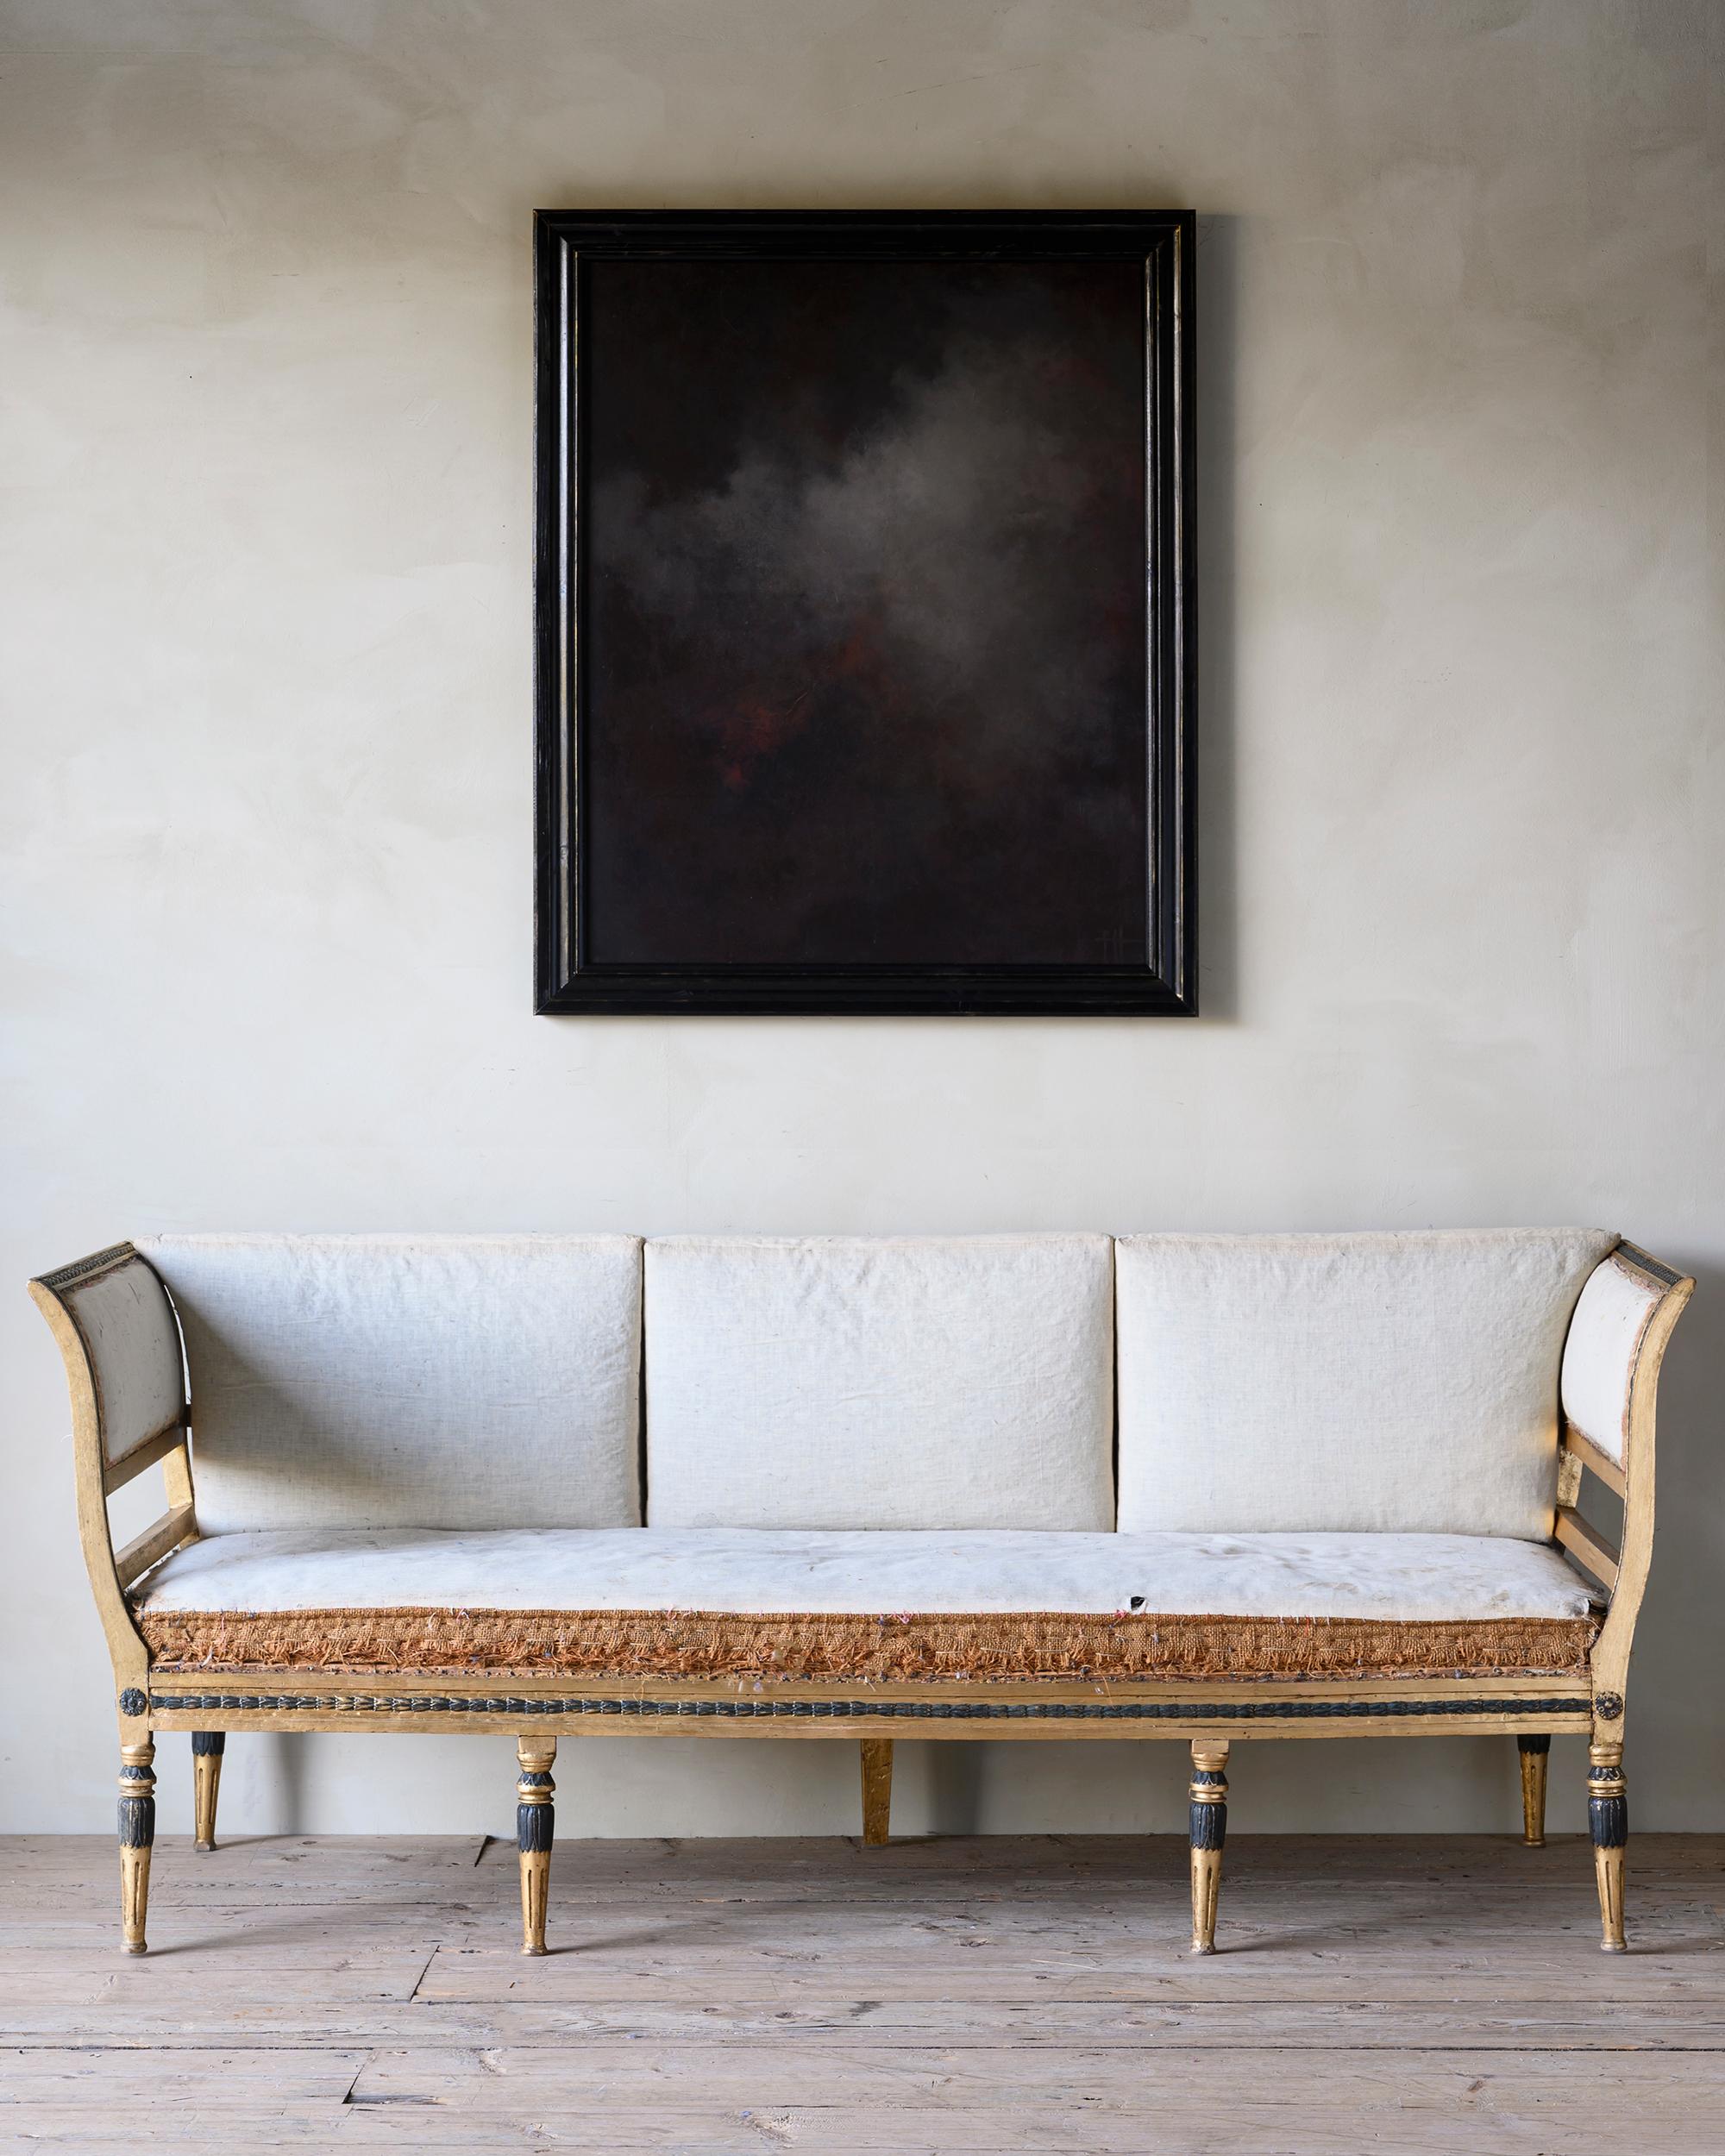 Feines goldbemaltes schwedisches gustavianisches Sofa aus dem 19. Jahrhundert mit seinem originalen pad. Derzeit in Musselin und ungepolstert. Um 1810 Schweden.